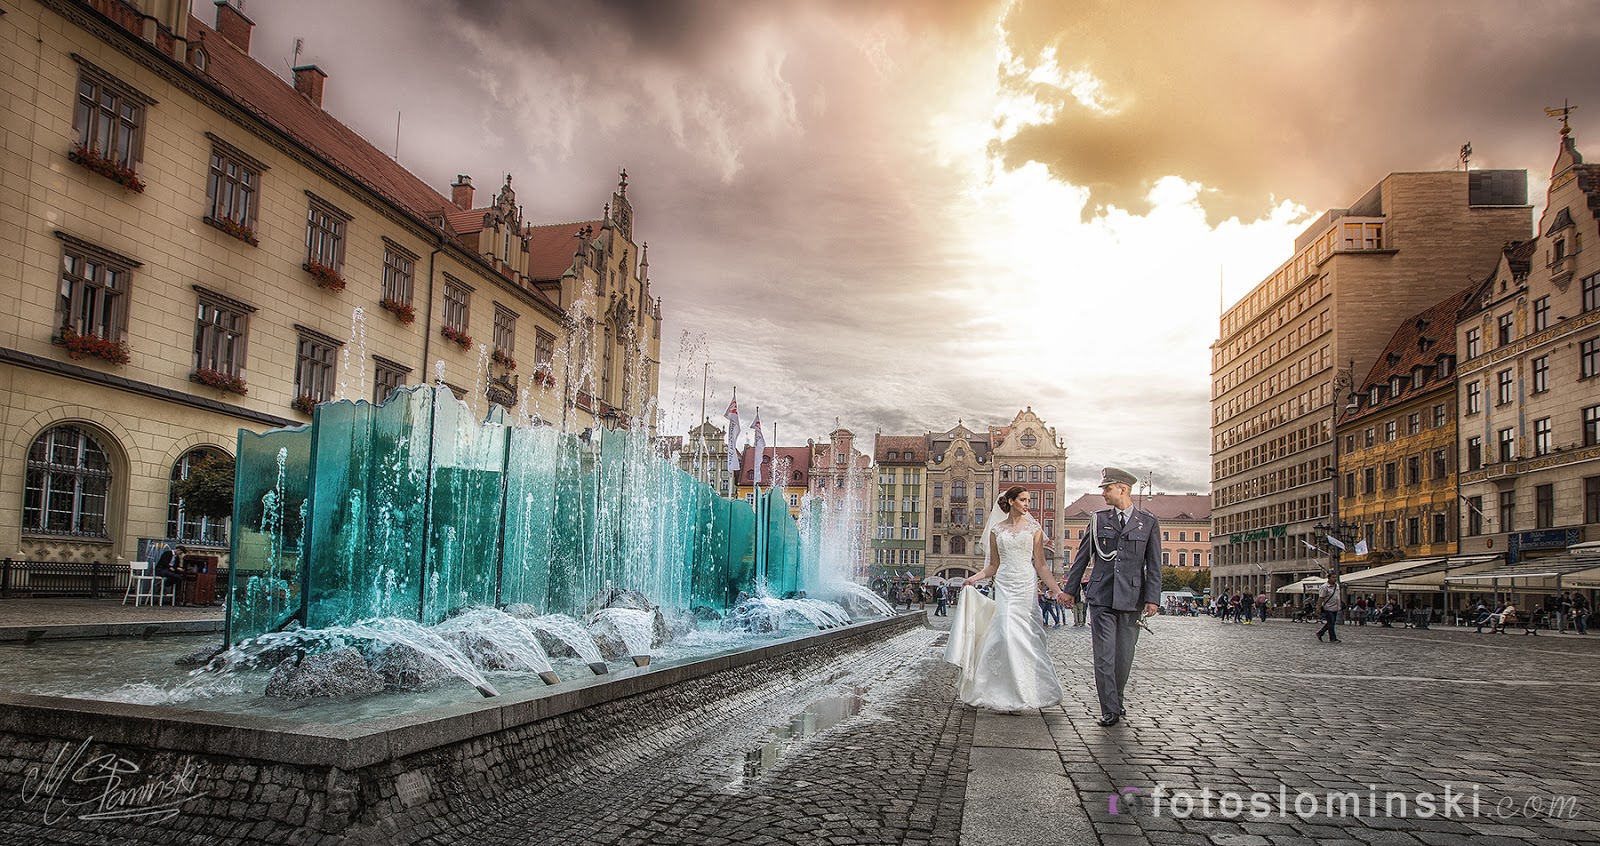 Wyjątkowo piękne miasto Wrocław - #ZdjęciaSłomińskiego z Wrocławia - Fotografia ślubna Wrocław.